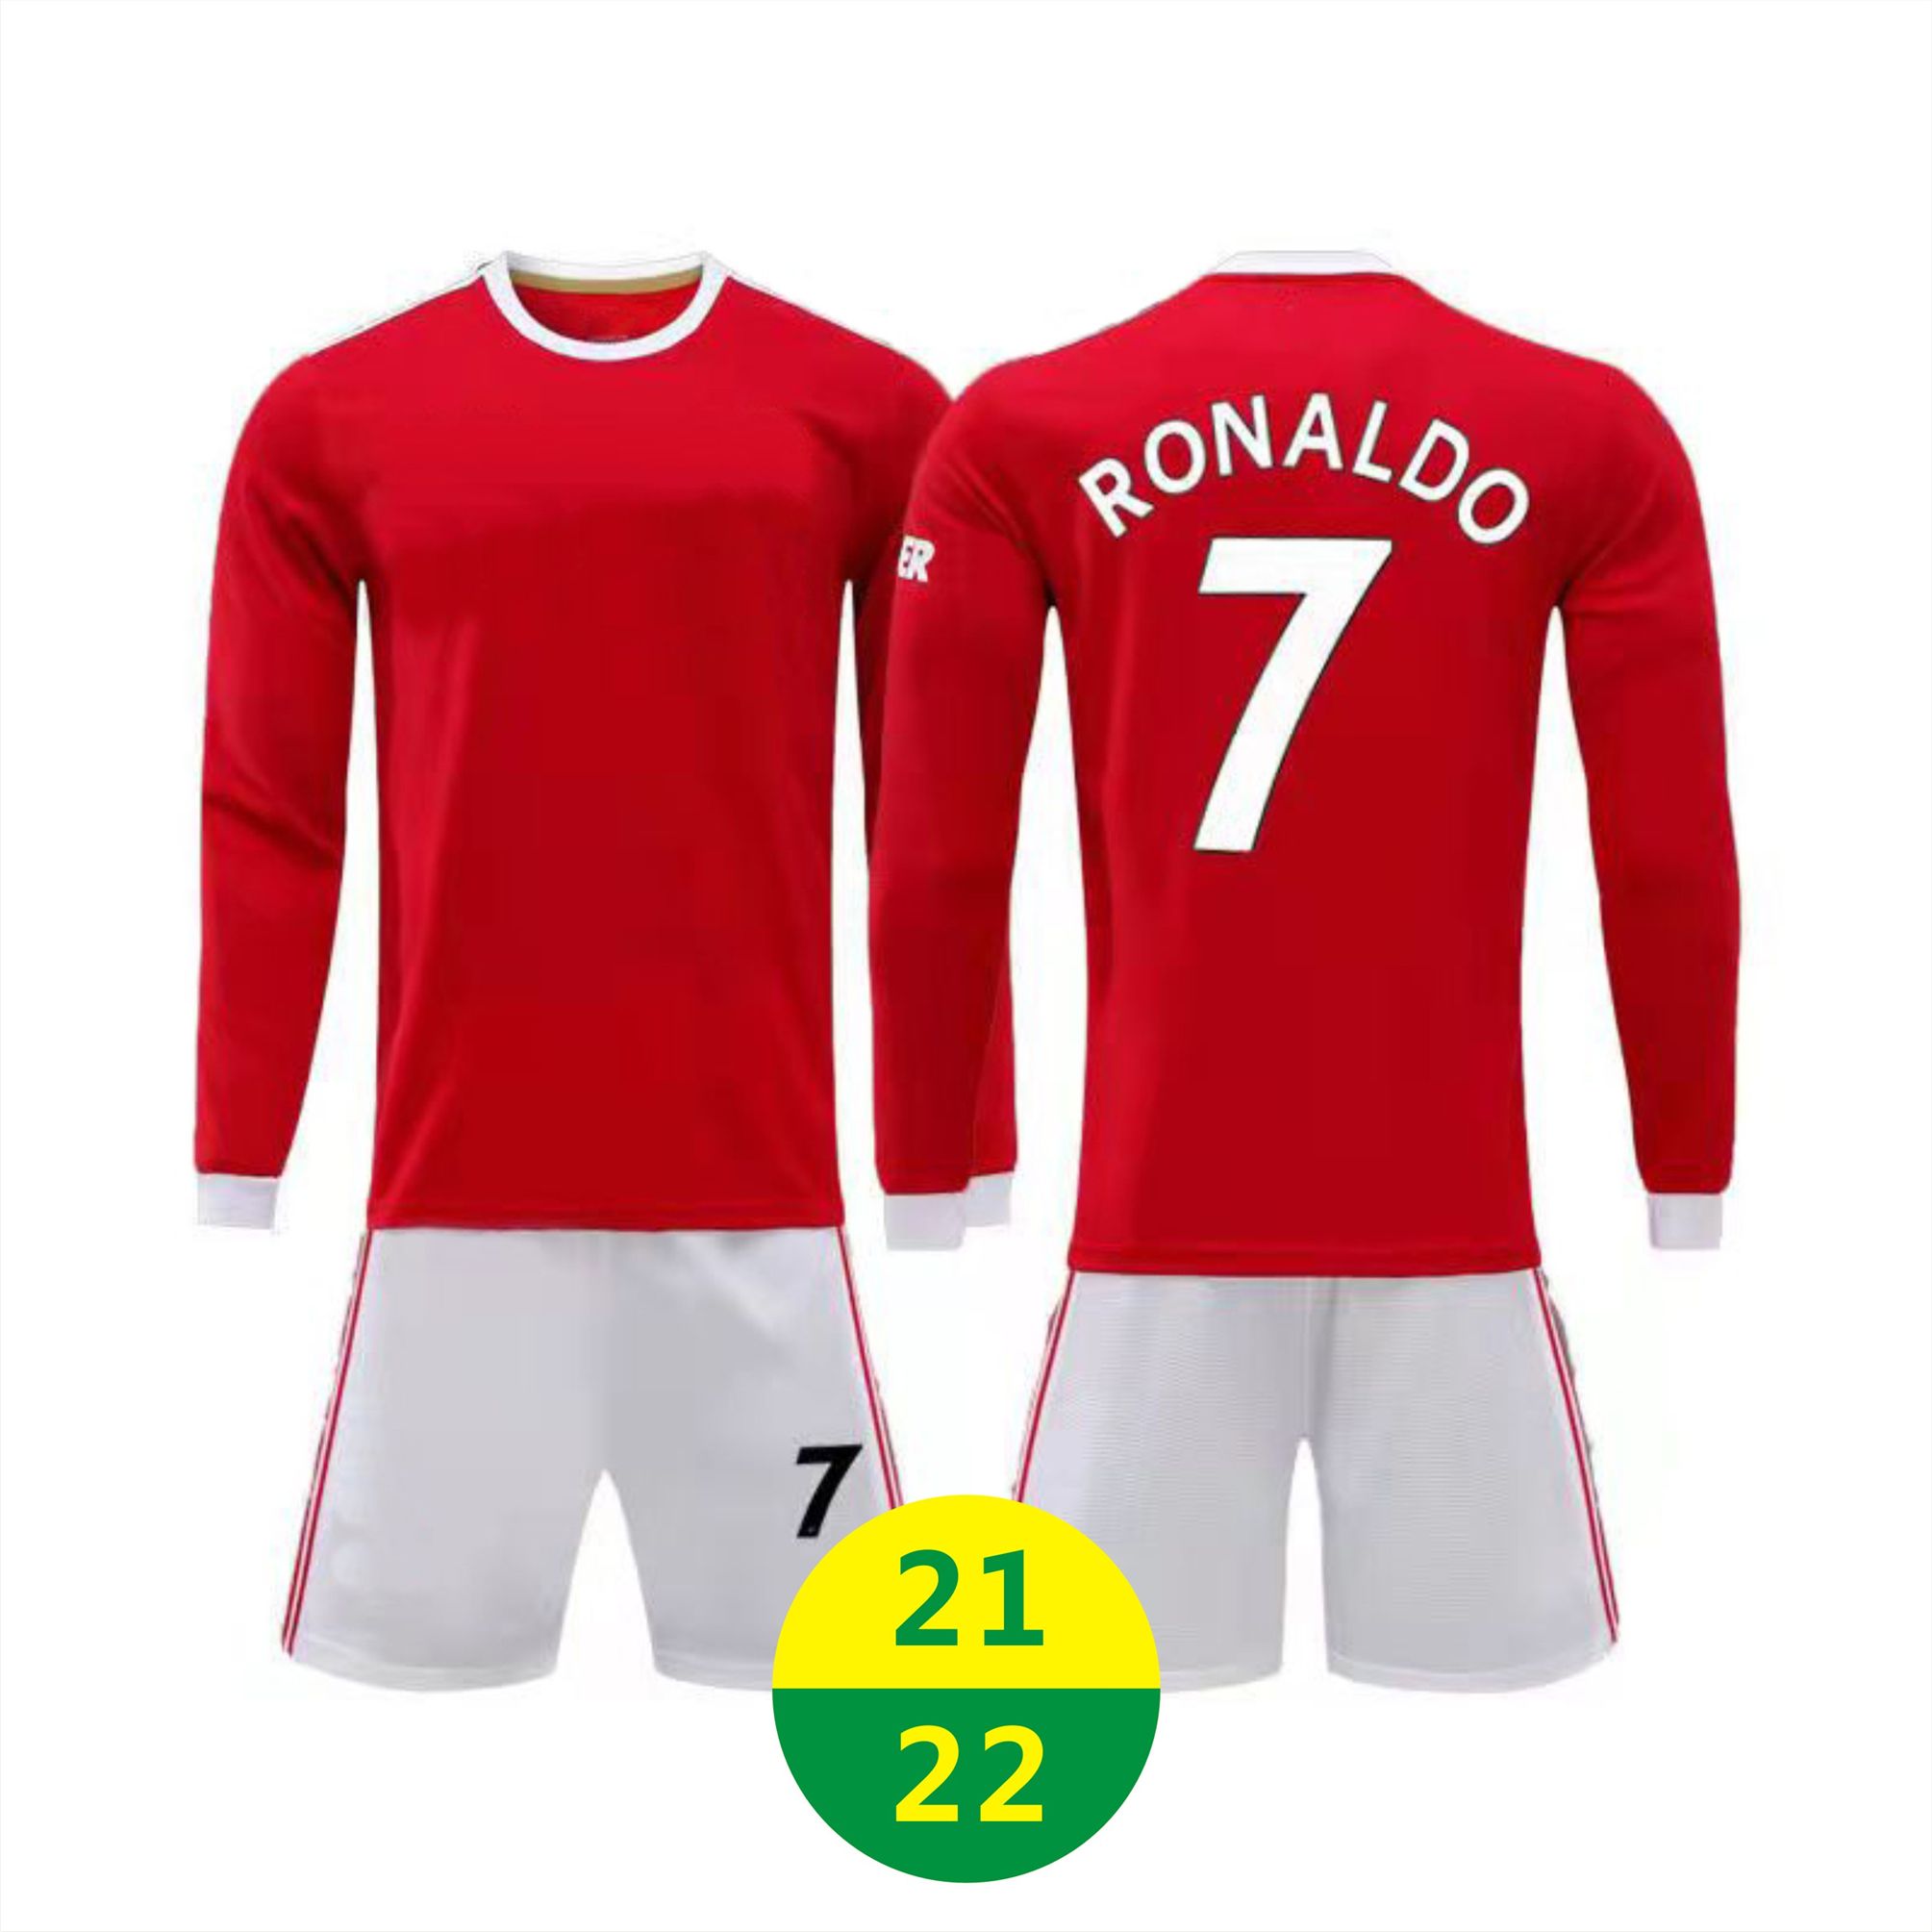 US Fast 21 22 Hem Jersey Ronaldo fotbollskläder röd # 7 tröjor Vuxen Långärmad kostym Träning TrackSuit 2021 Mens Sportkläder Kids Fotbollskjortor 2022 med logotyp # MLZ-21A1